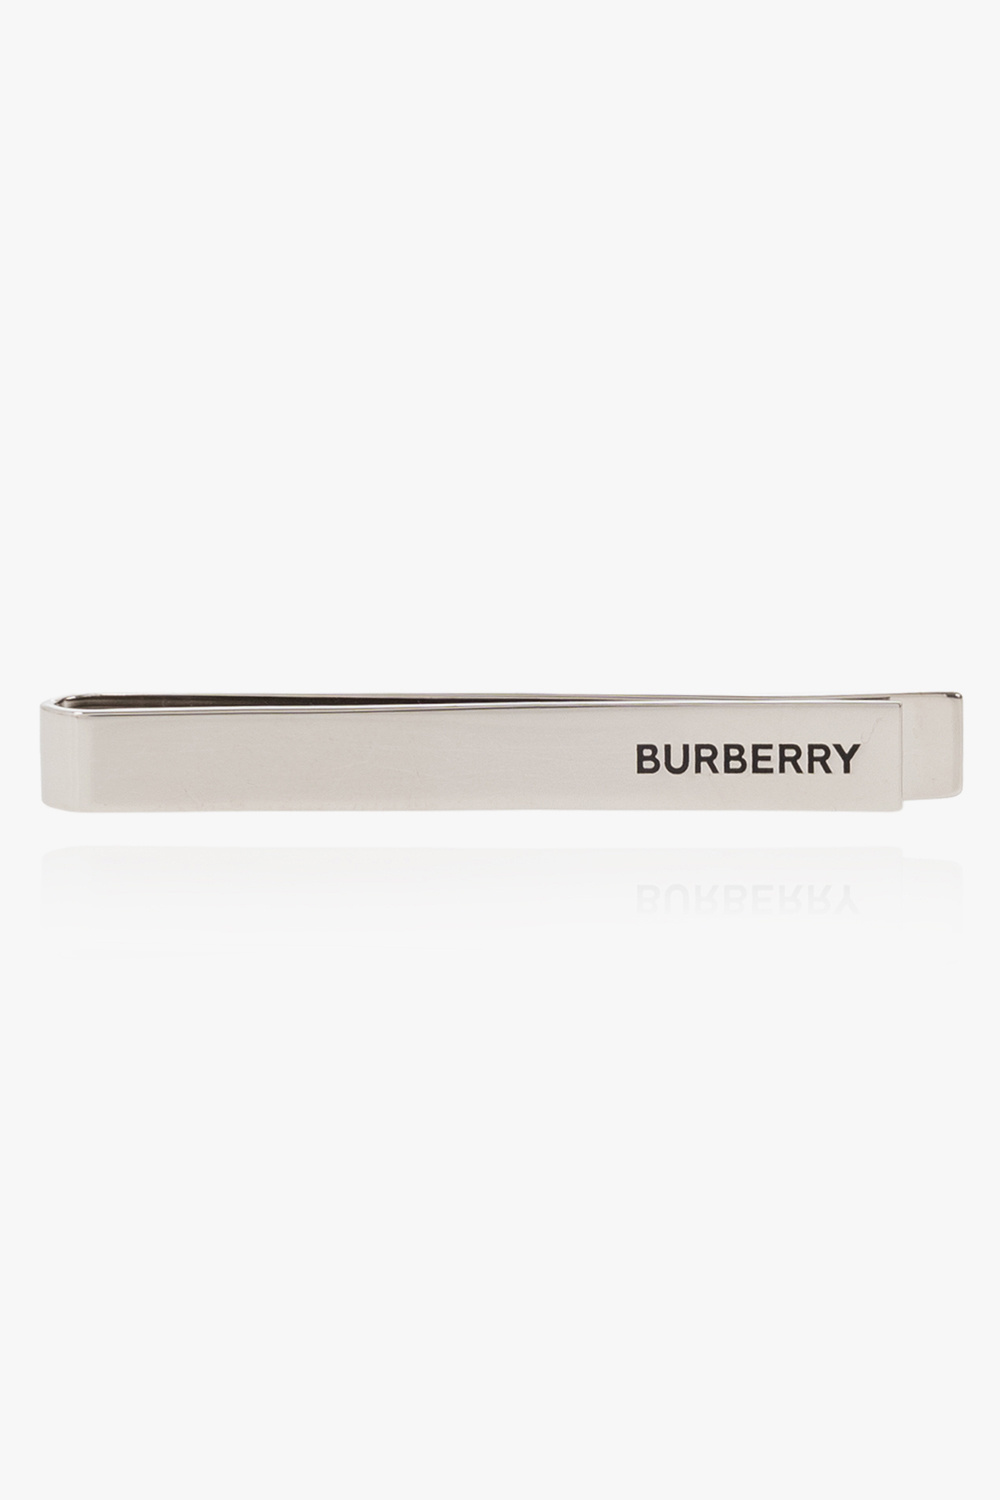  Burberry Burberry 8035692 Men's Tie Clip Logo Bar